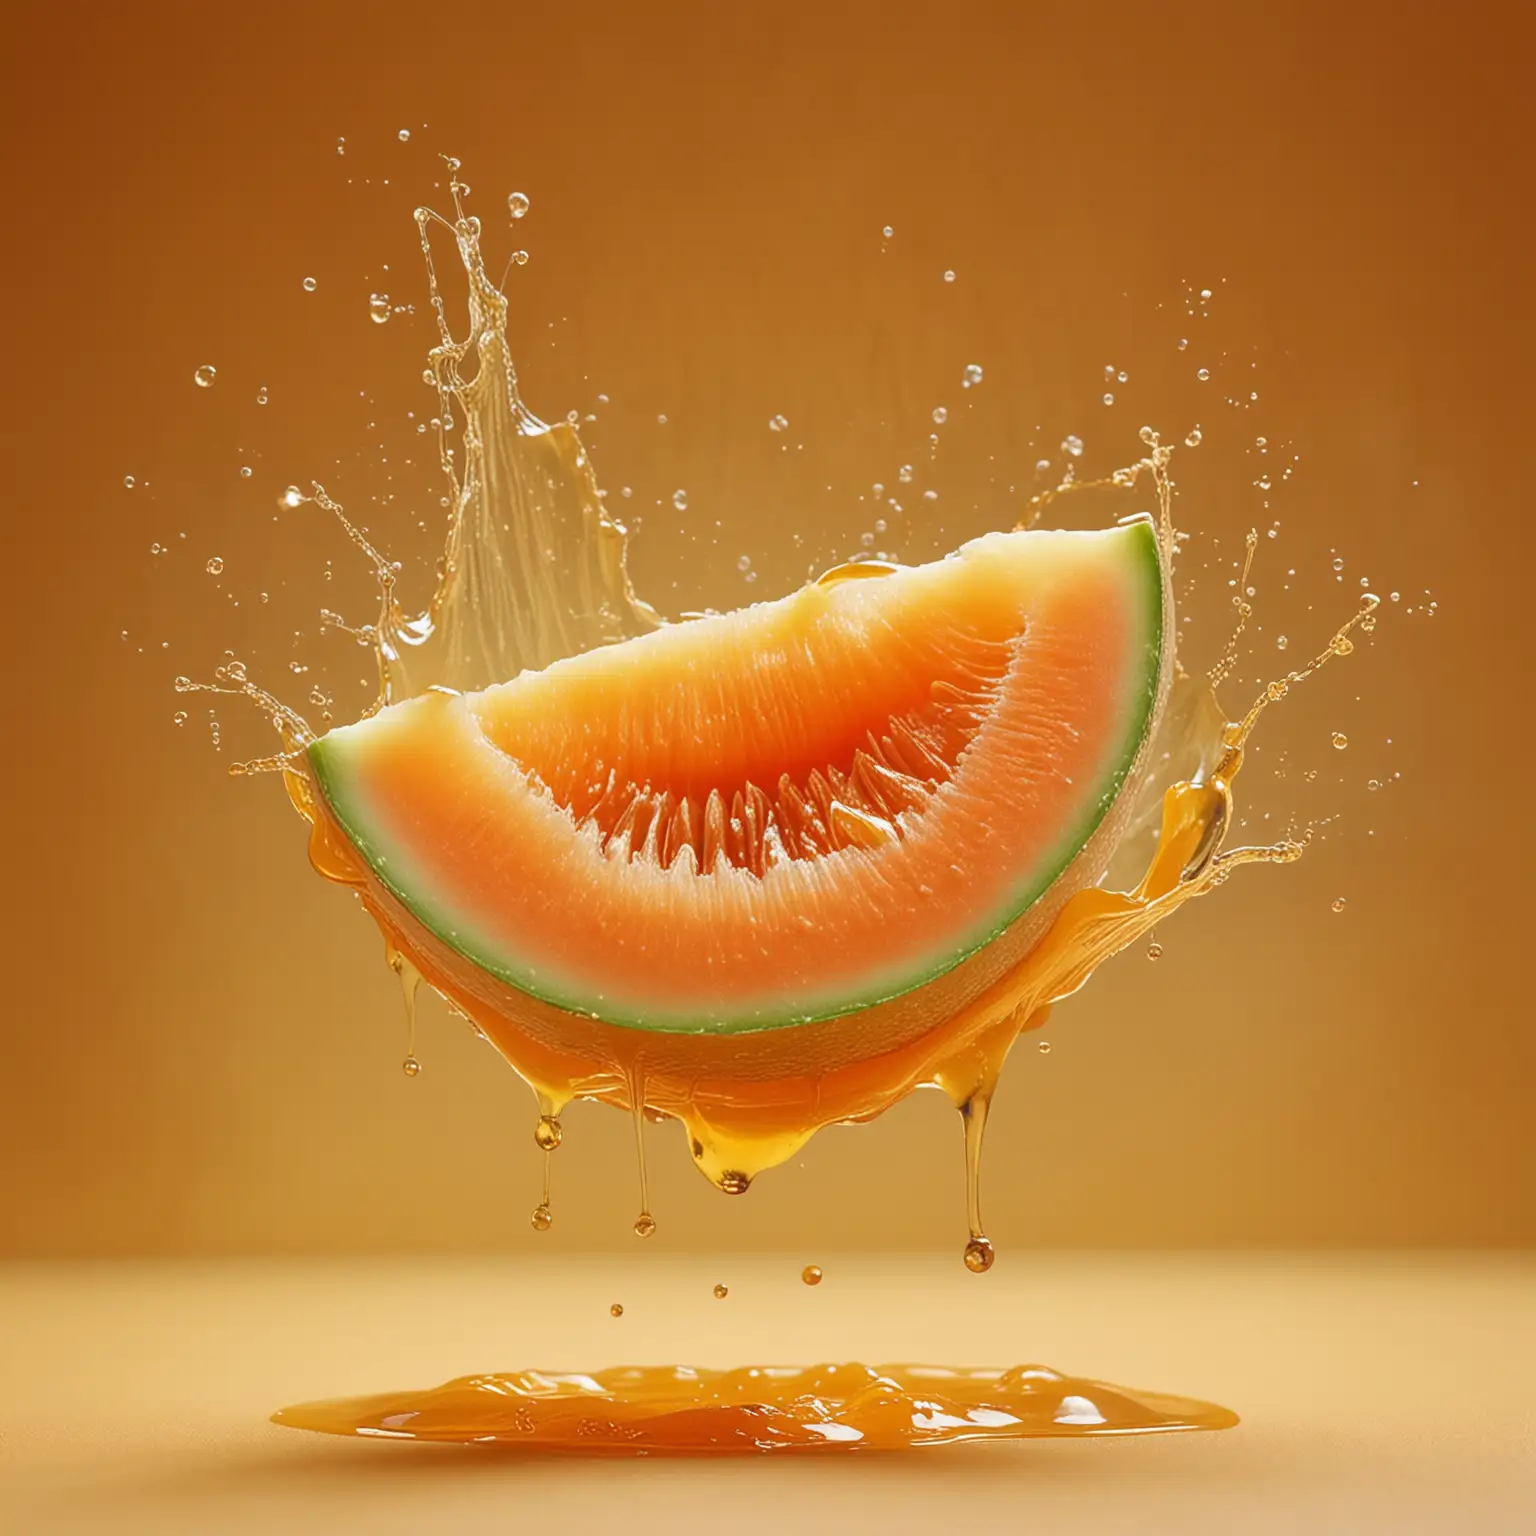 Juicy-Ripe-Melon-Caramel-on-Honey-Orange-Background-Delicious-Fruit-Splash-Art